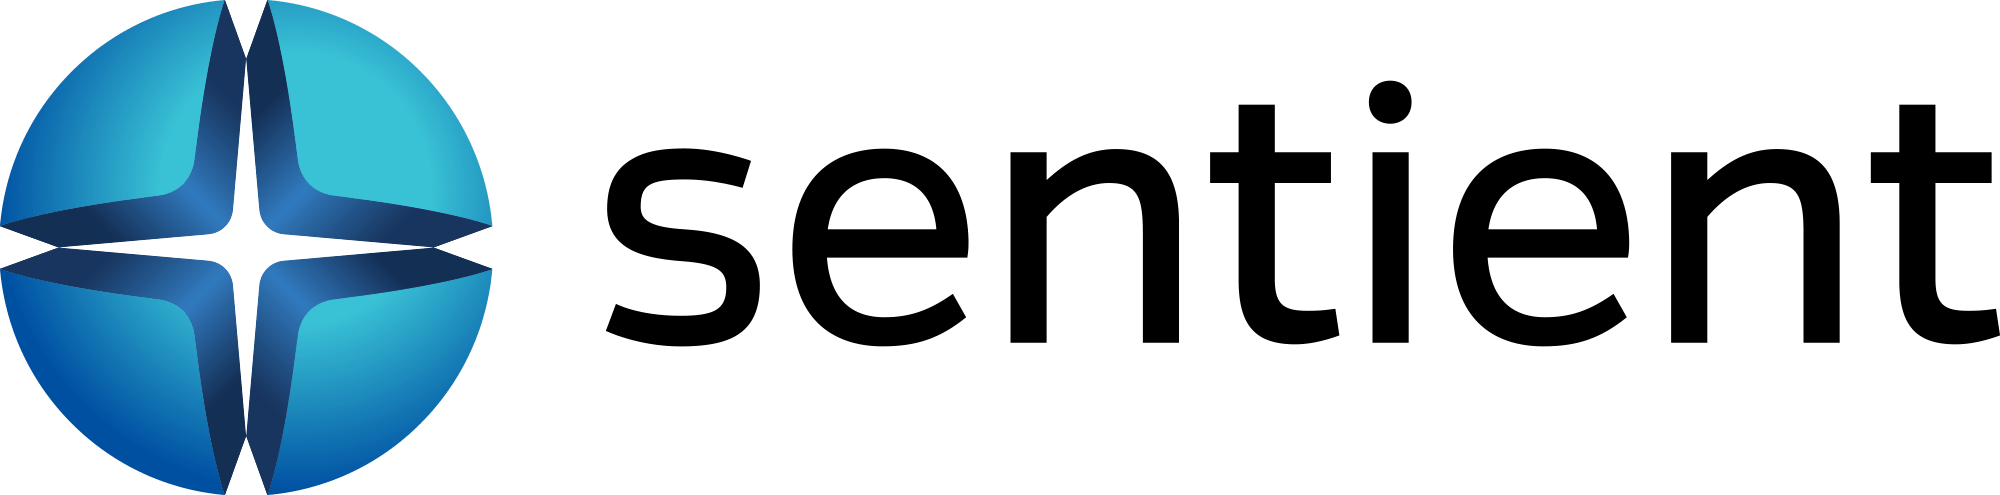 Evolv erwarb im März 2019 Sentient Ascend™, eine weltbekannte Plattform zur Conversion-Optimierung